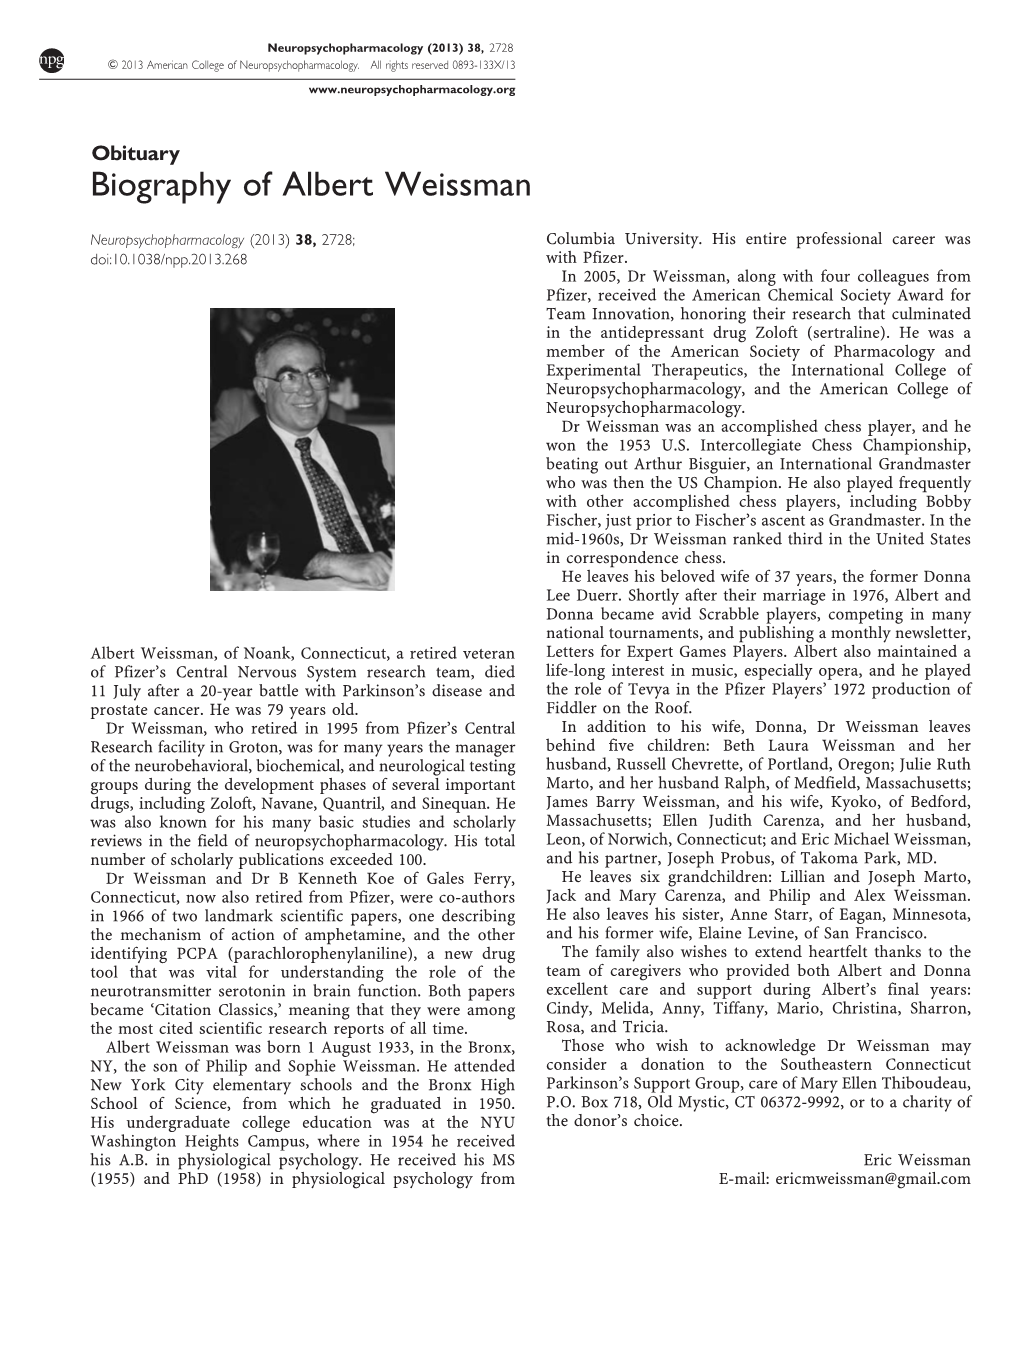 Biography of Albert Weissman